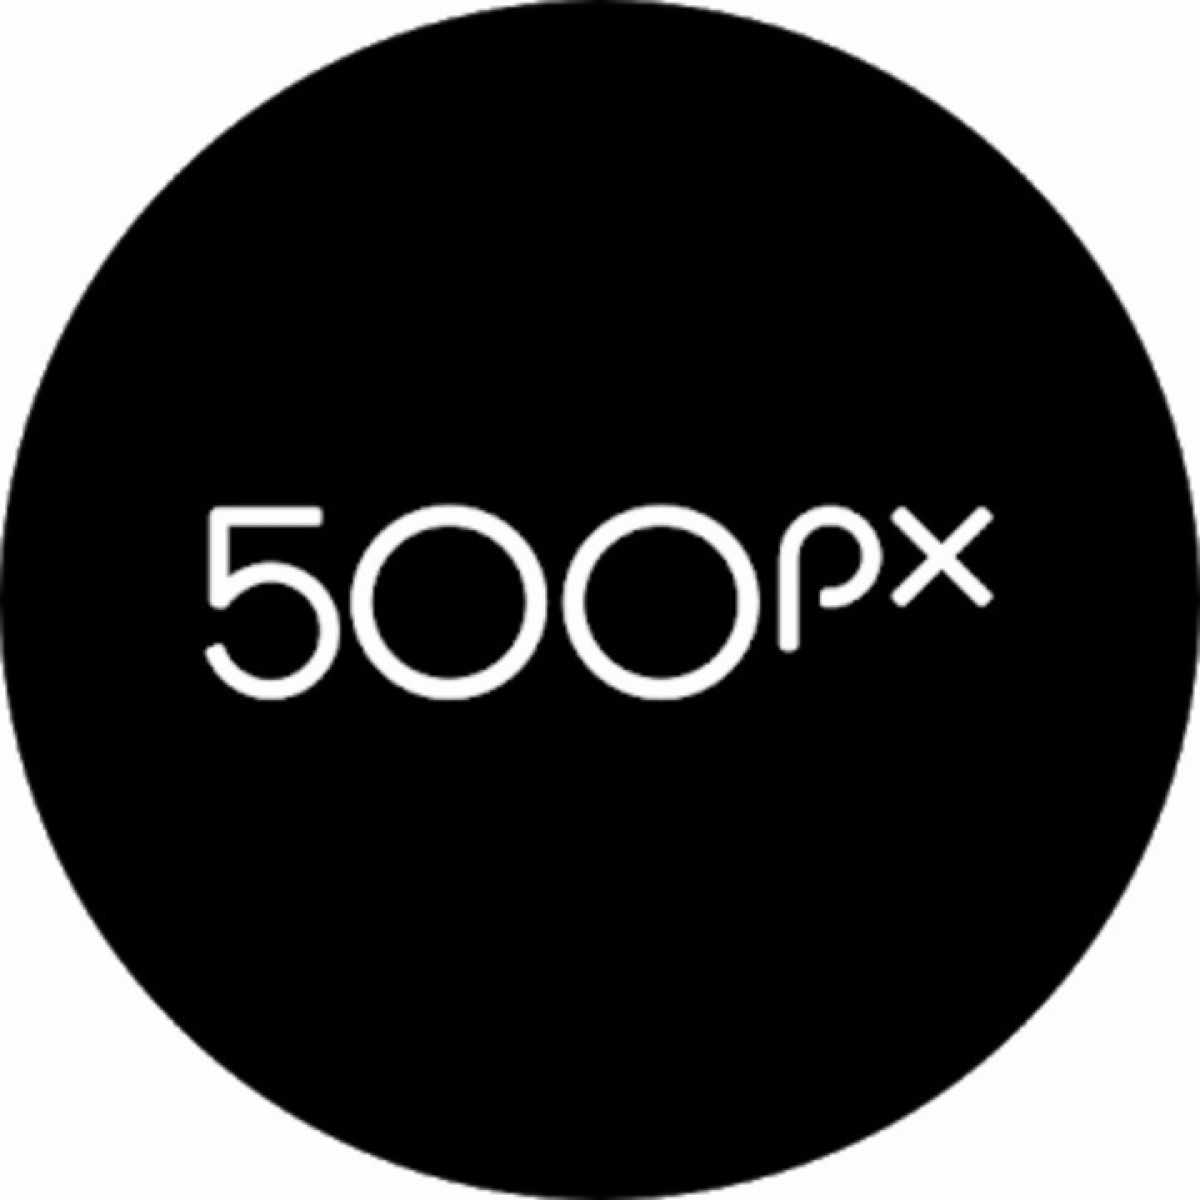 500px – Discover great photos v6.4.2 (Premium) Apk